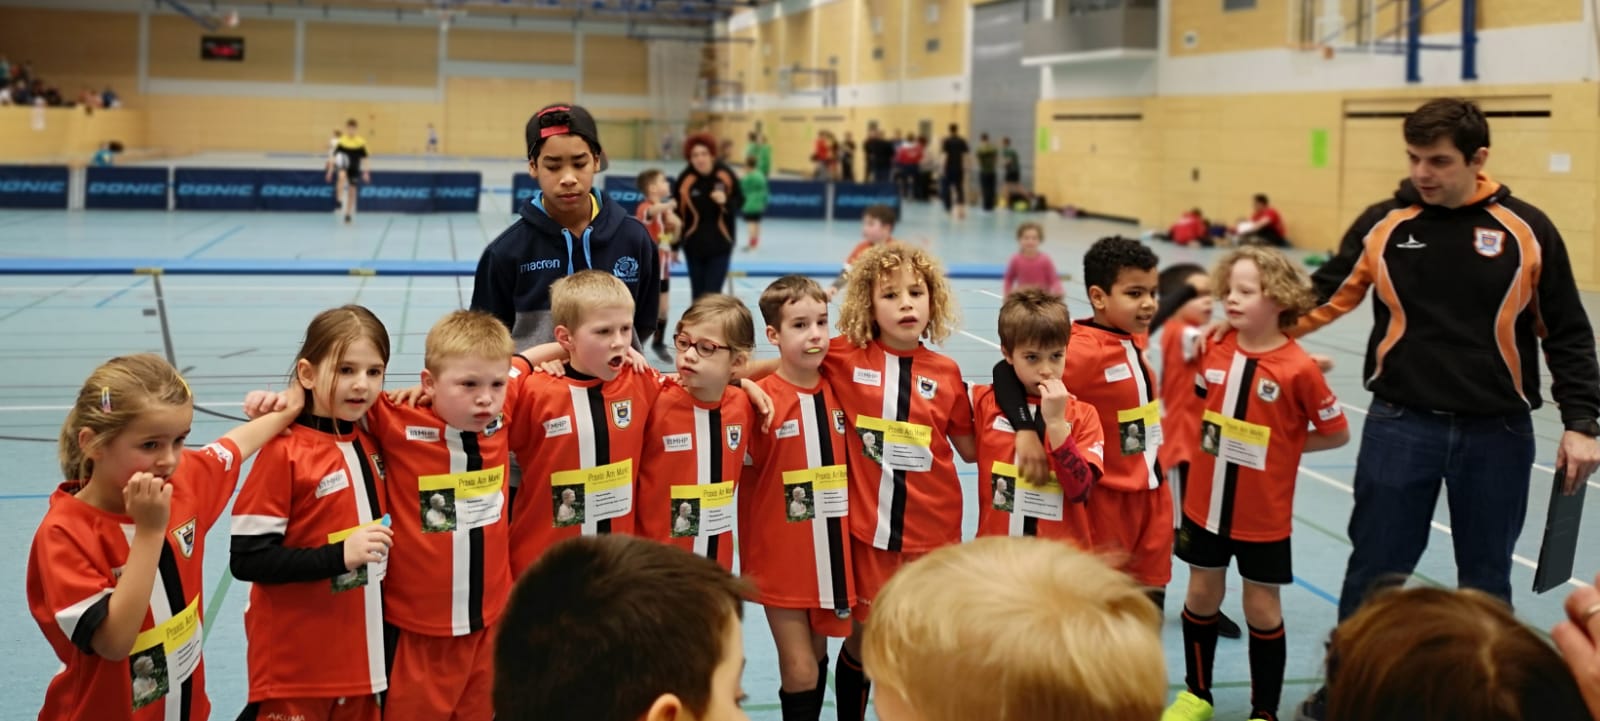 RG-Heidelberg U8-Jugend Turnier-Team-Orange 2019